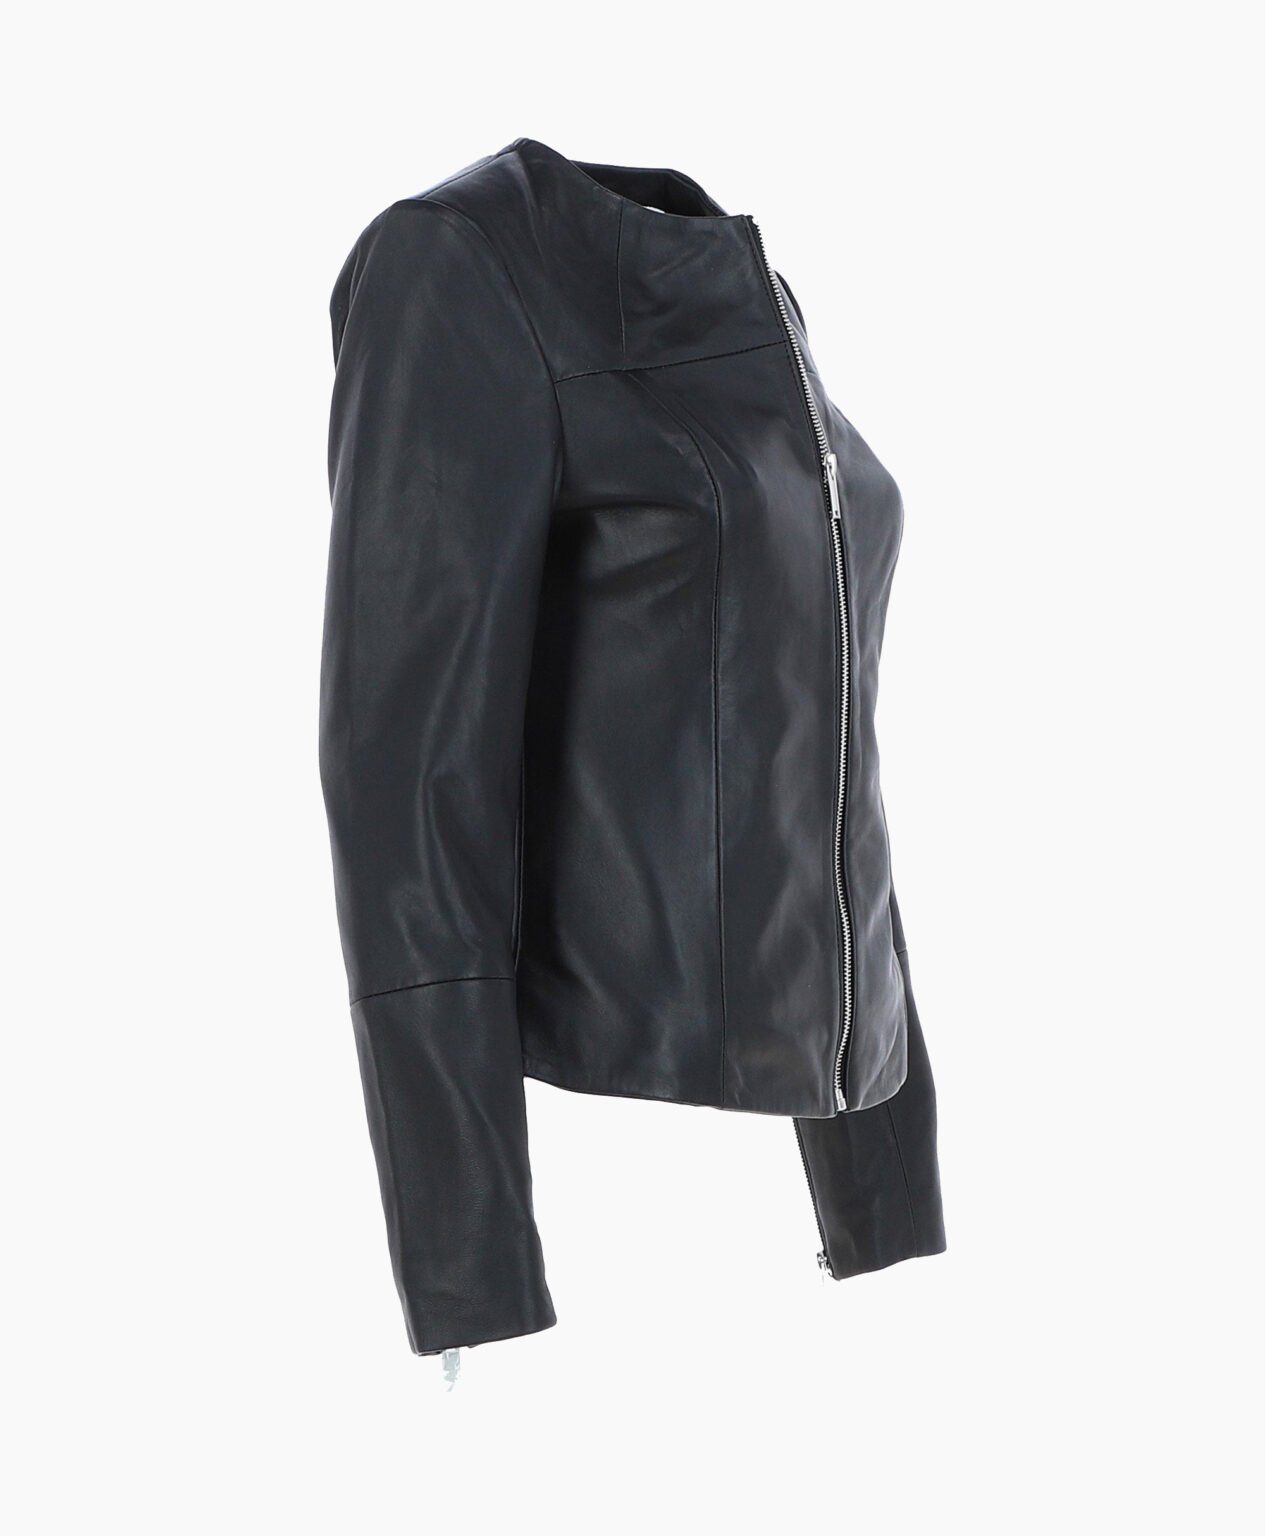 vogue-jacket-leather-fashion-jacket-black-elizabeth-image203